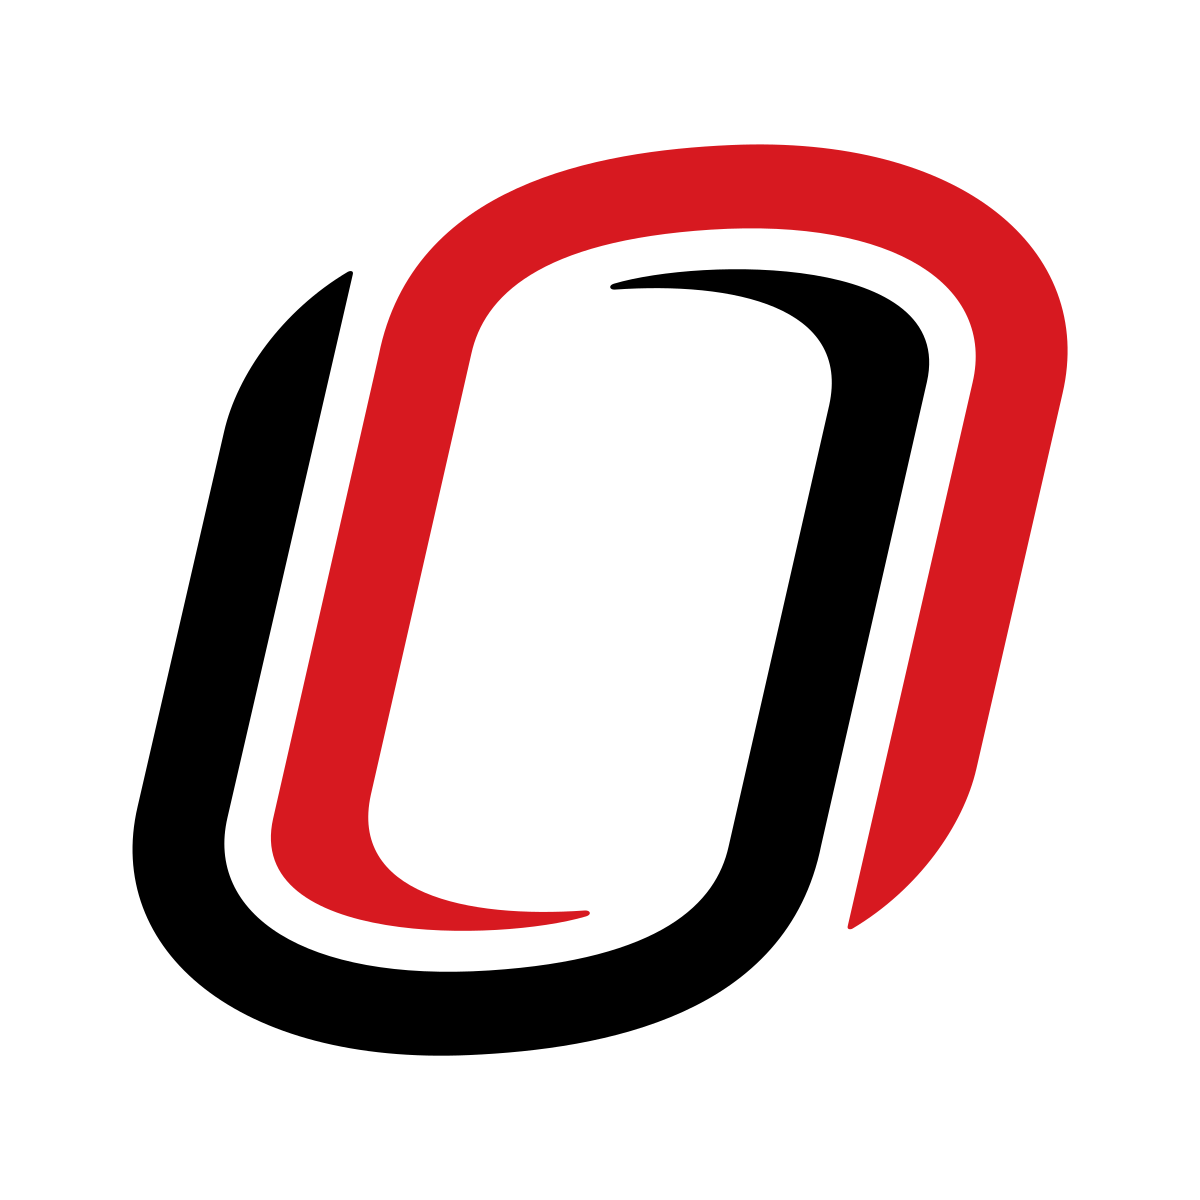 Nebraska Omaha Mavericks logo PNG